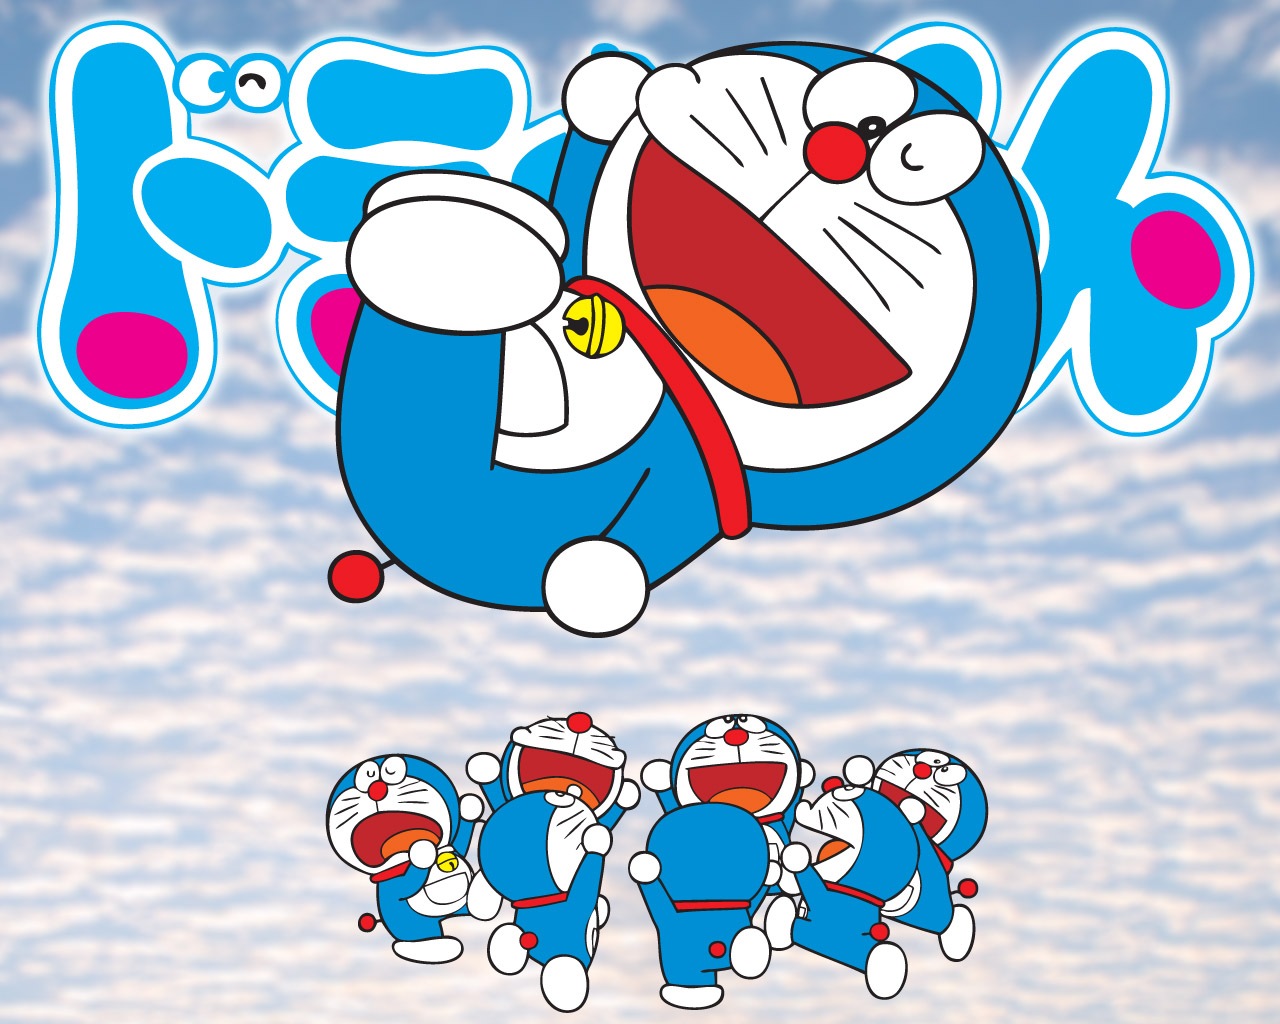 50 Doraemon Wallpaper For Android On Wallpapersafari